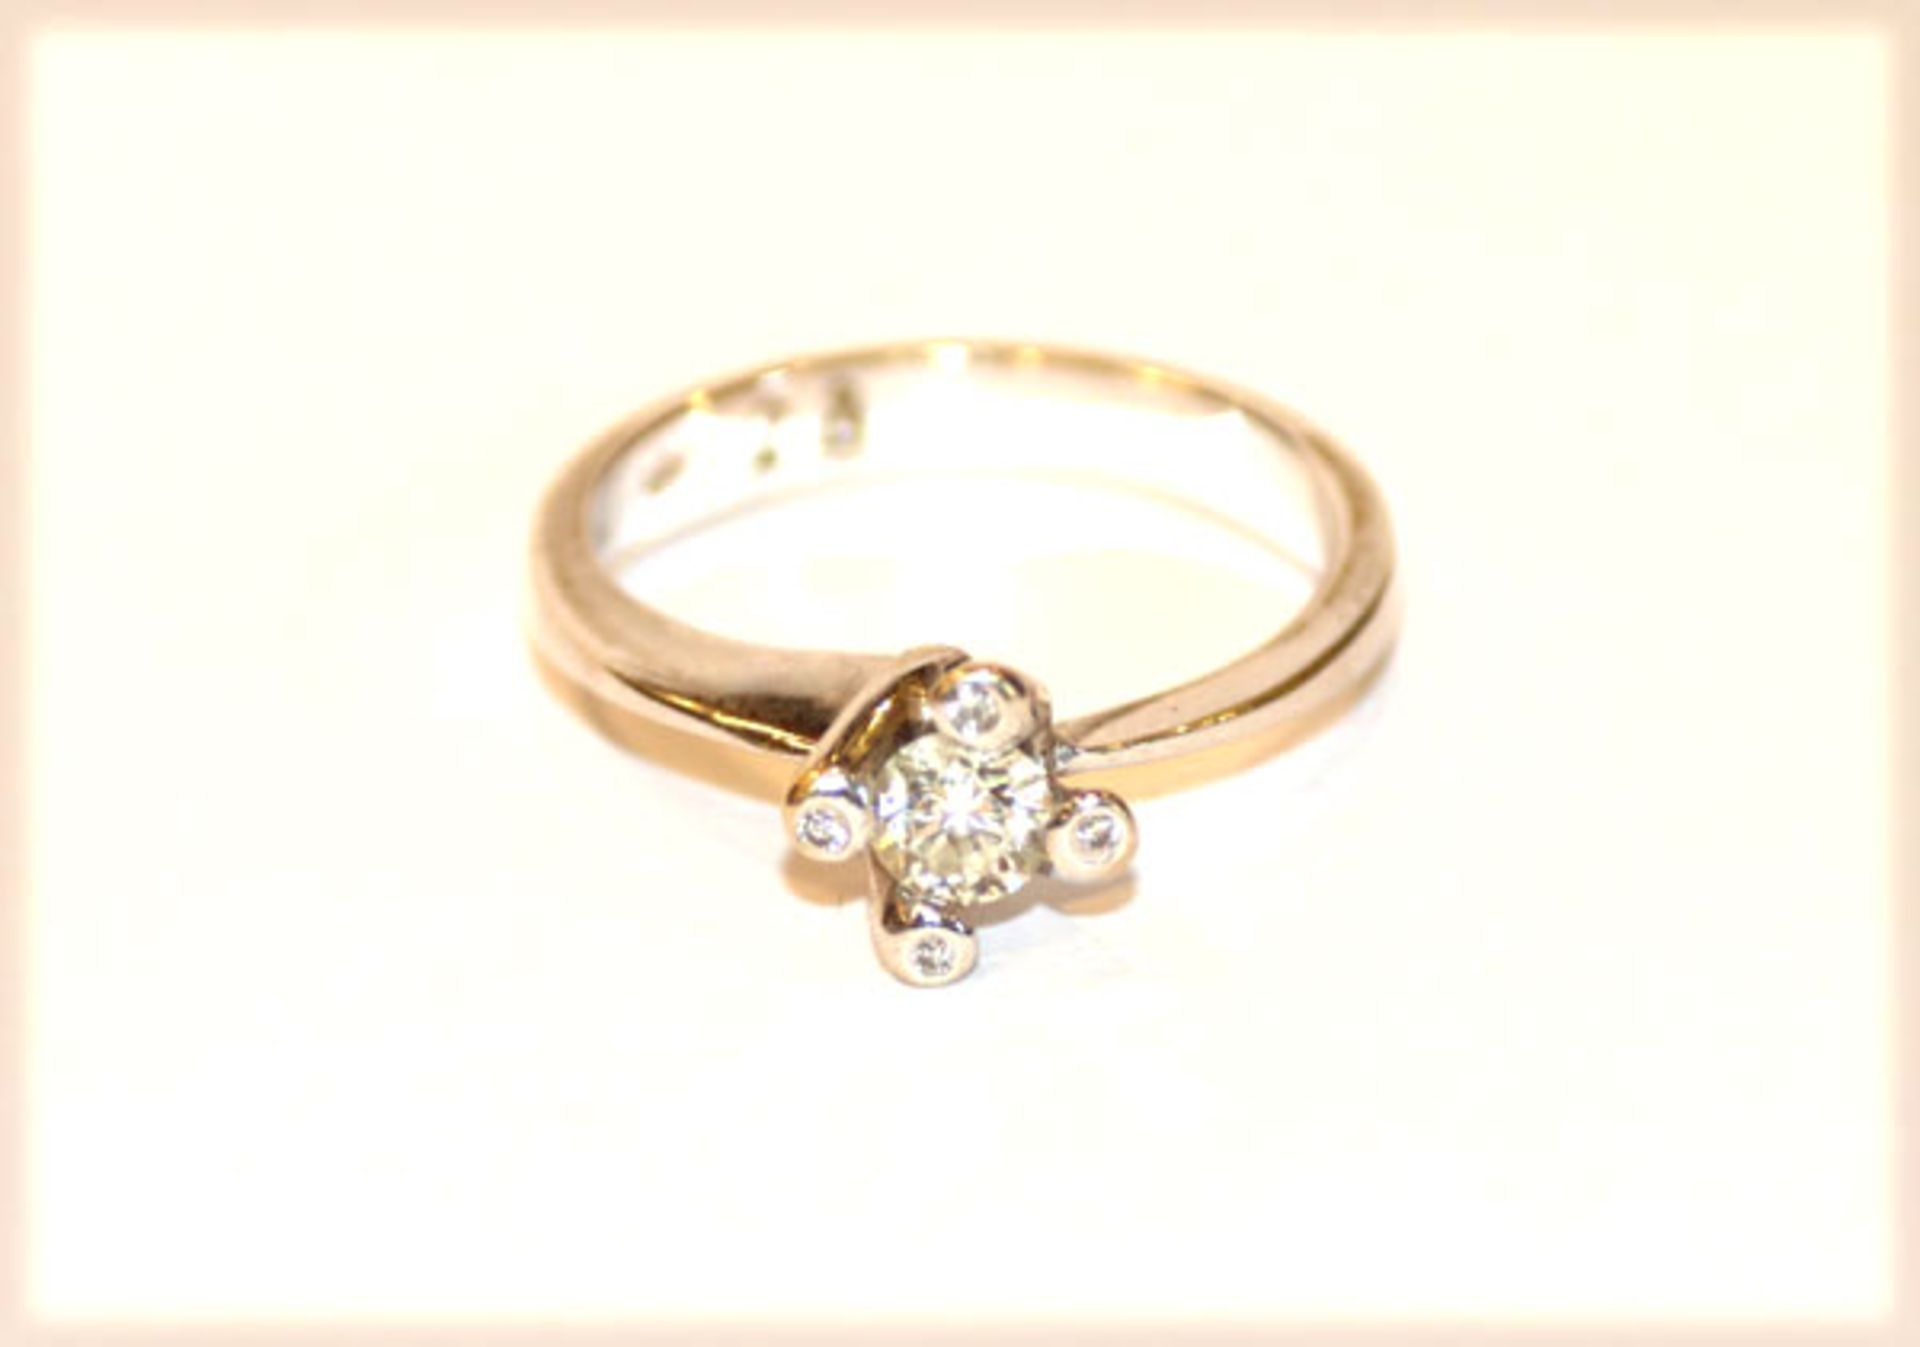 18 k Weißgold Ring mit 5 Diamanten, zus. ca. 0,25 ct., Gr. 52, 3,8 gr.